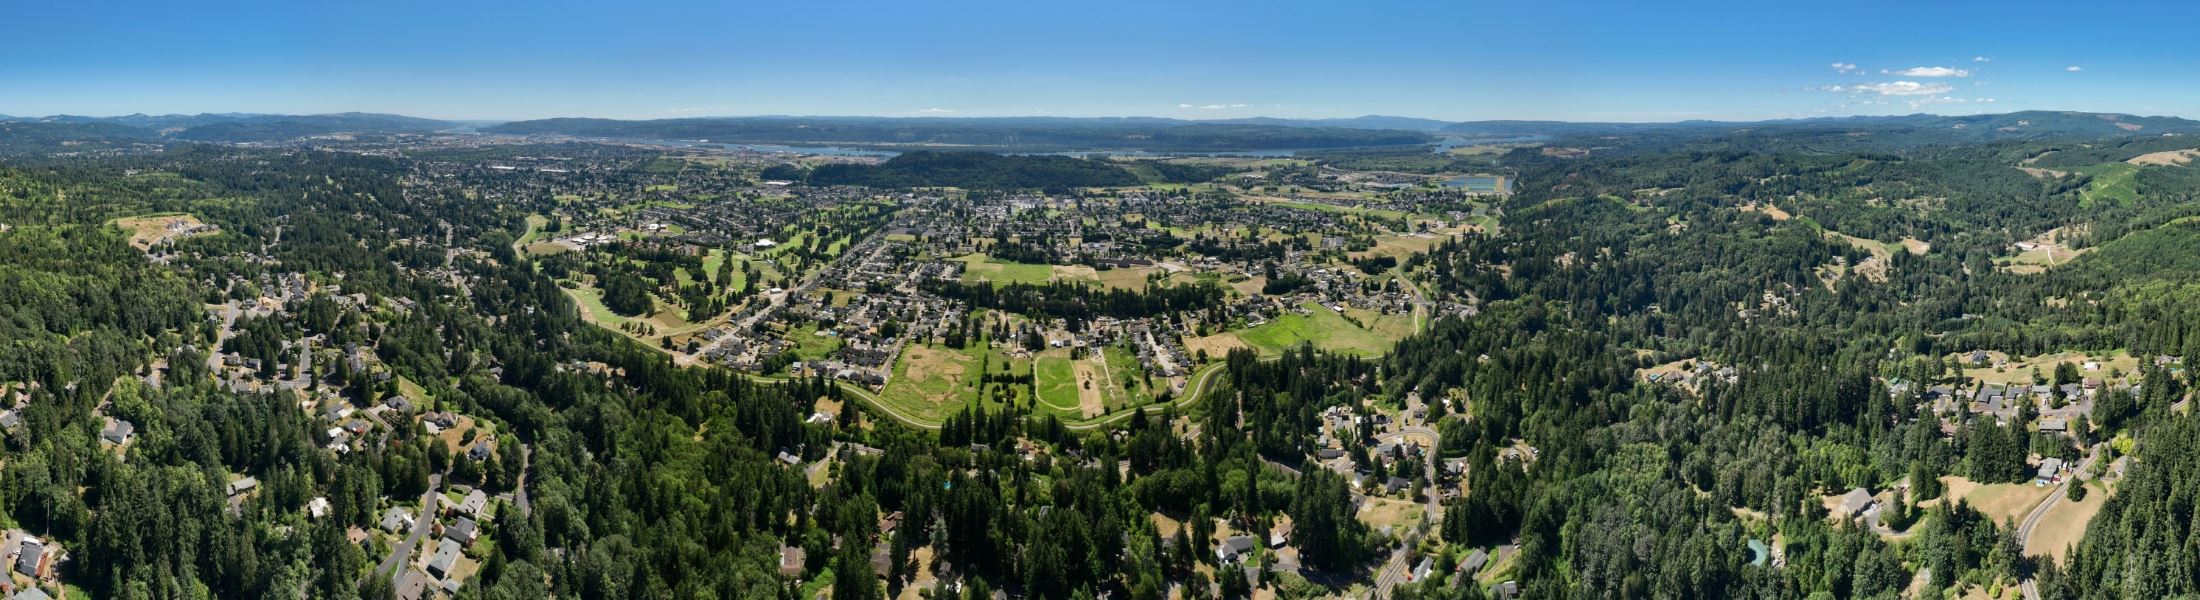 Aerial View of Longview